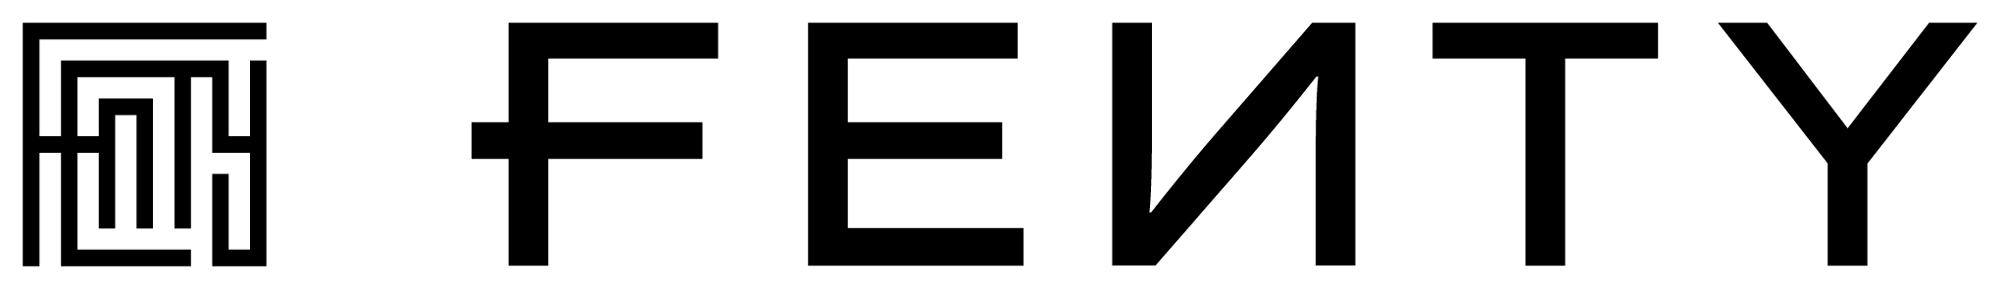 puma fenty logo